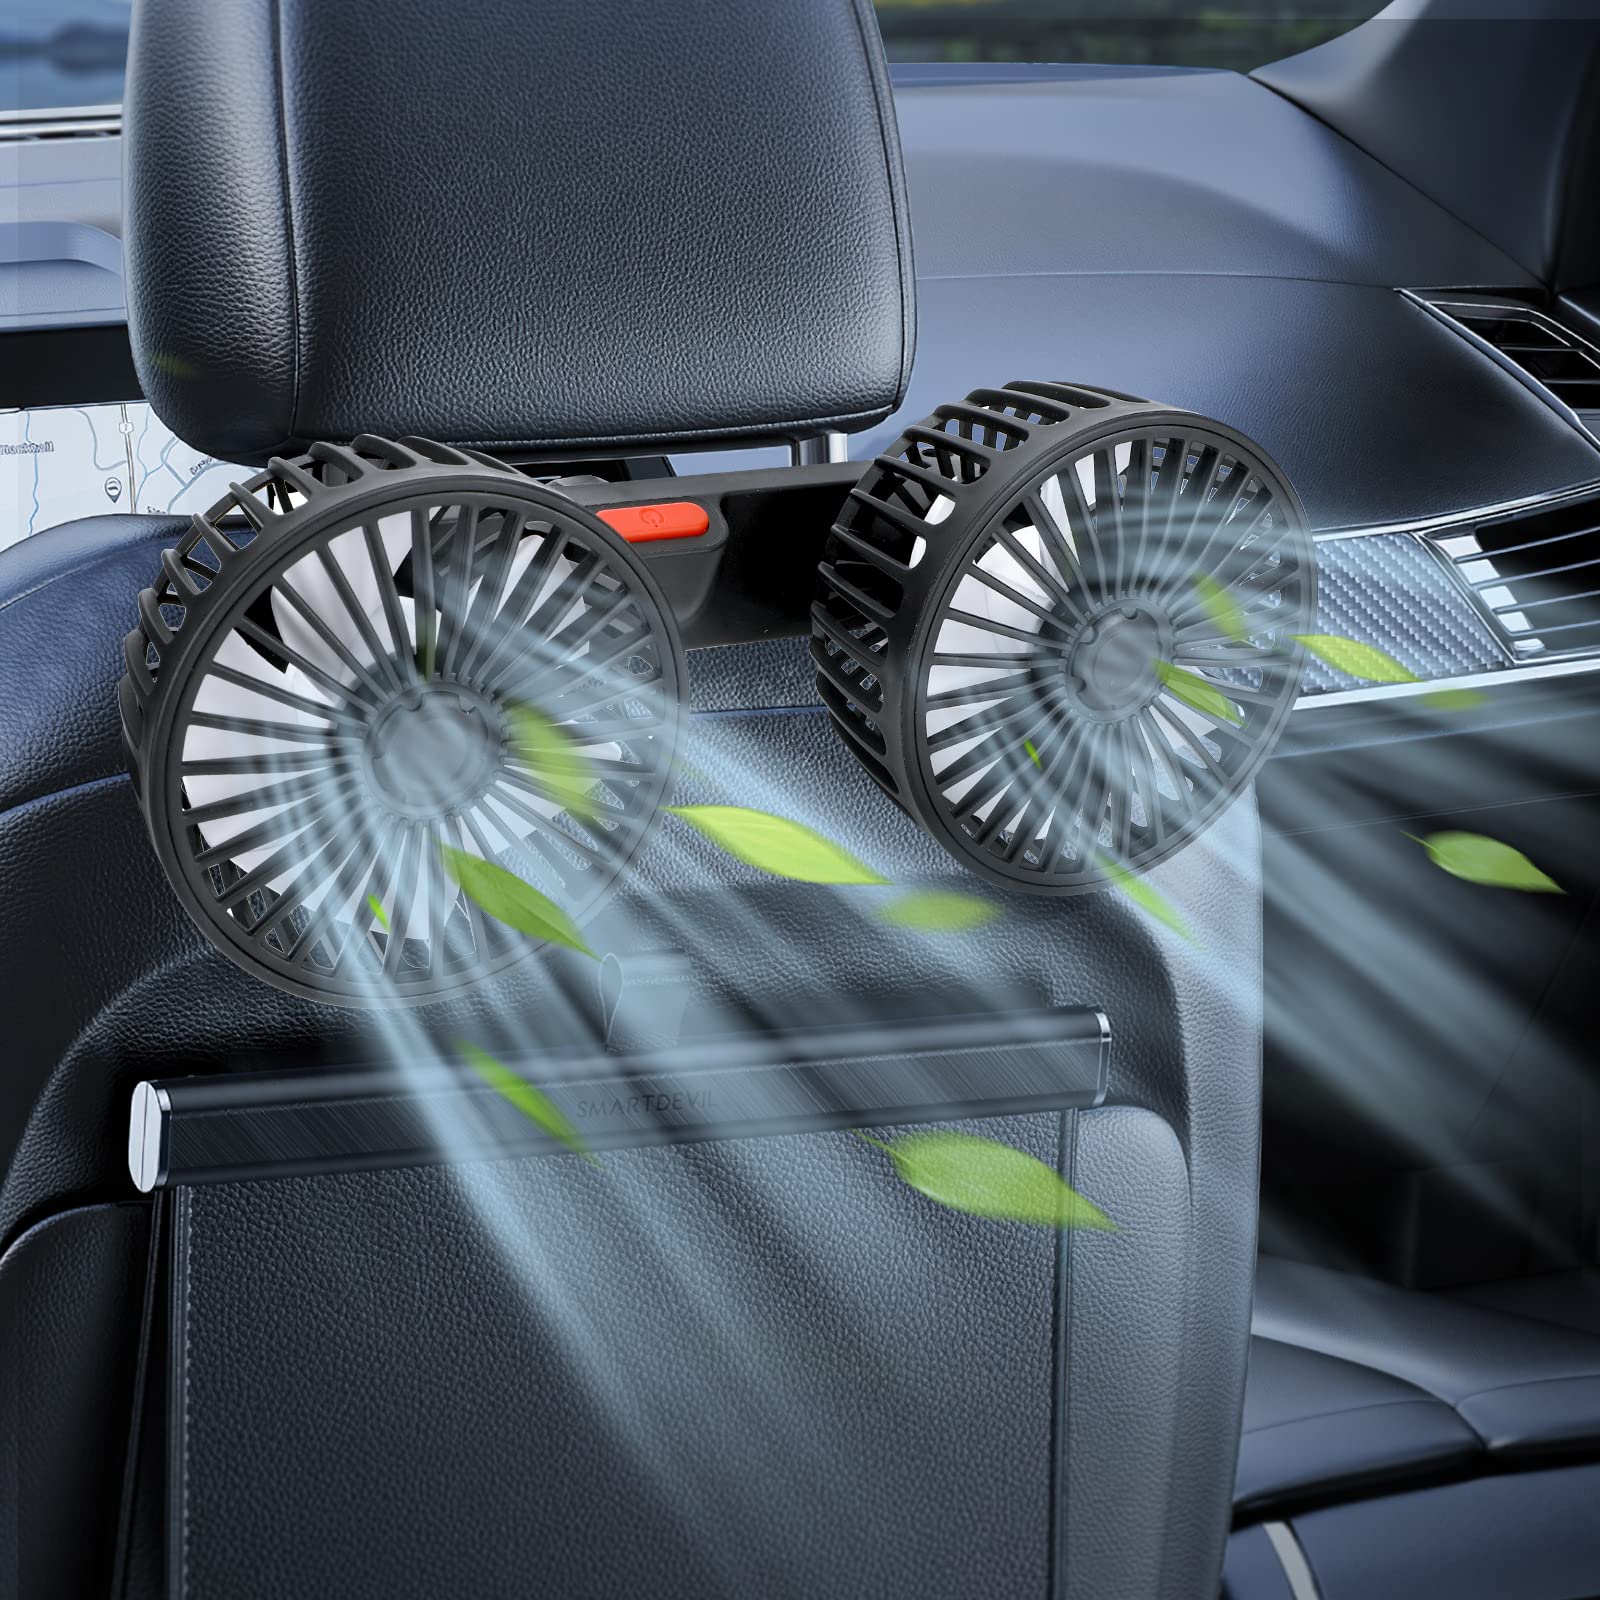 Achort Auto Kfz Ventilator 5V Auto Kfz Lüfter, Doppellüfter, Gebläse Klimaanlage Fan mit 3 Geschwindigkeiten und 360-Grad-Drehung Doppellüfter Einstellbare Ventilatoren von Achort